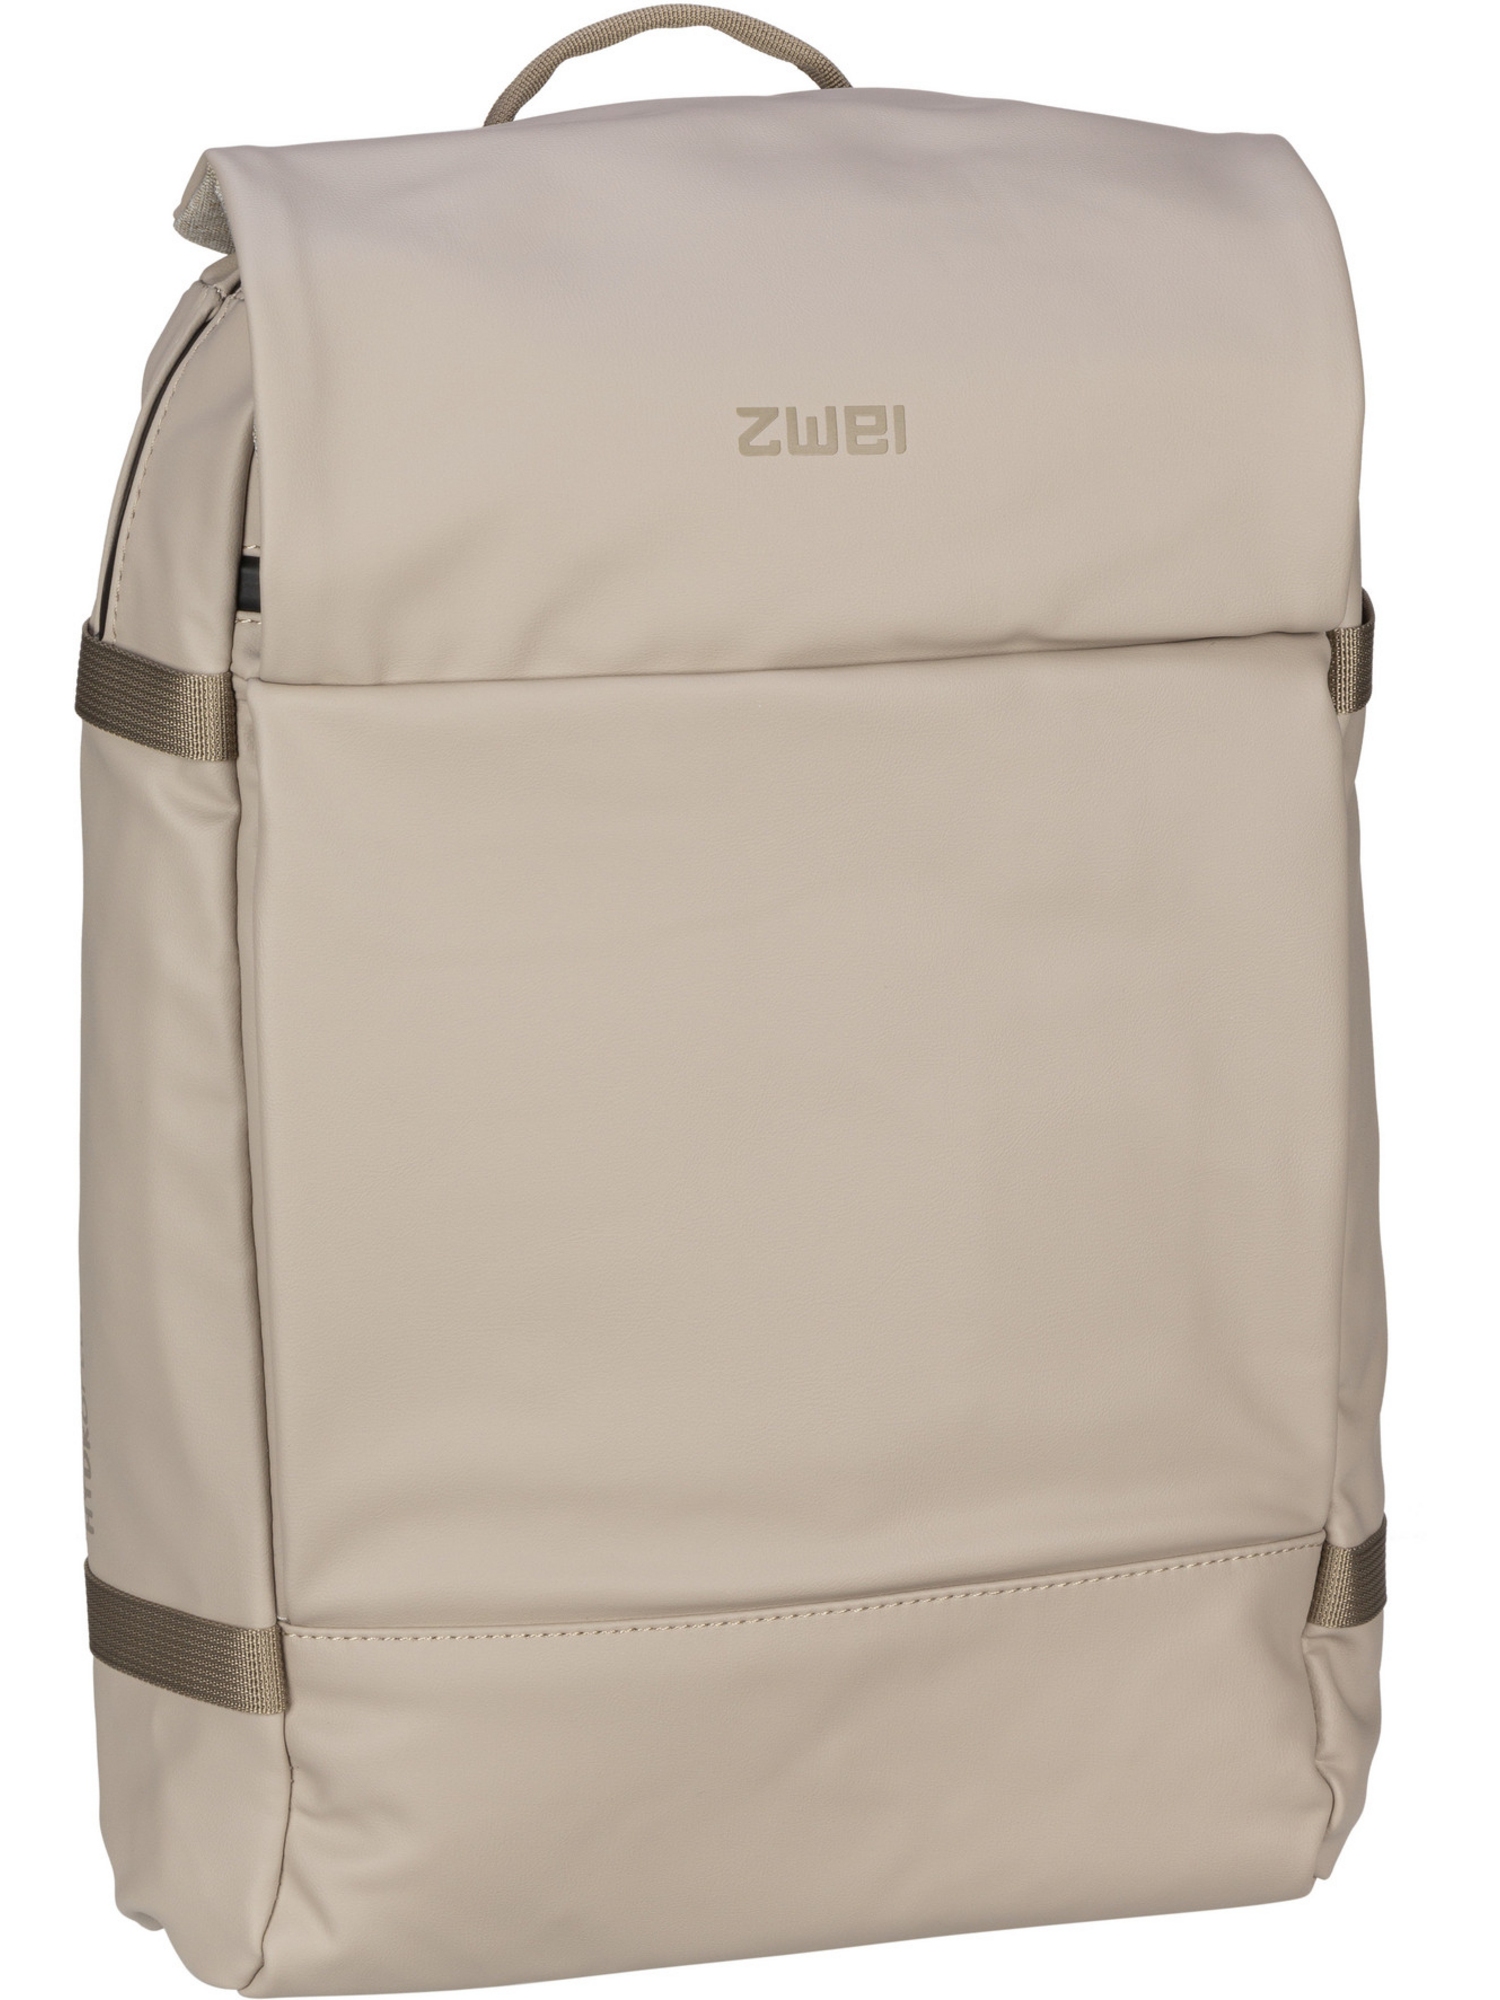 Рюкзак Zwei/Backpack Aqua AQR150, песочный